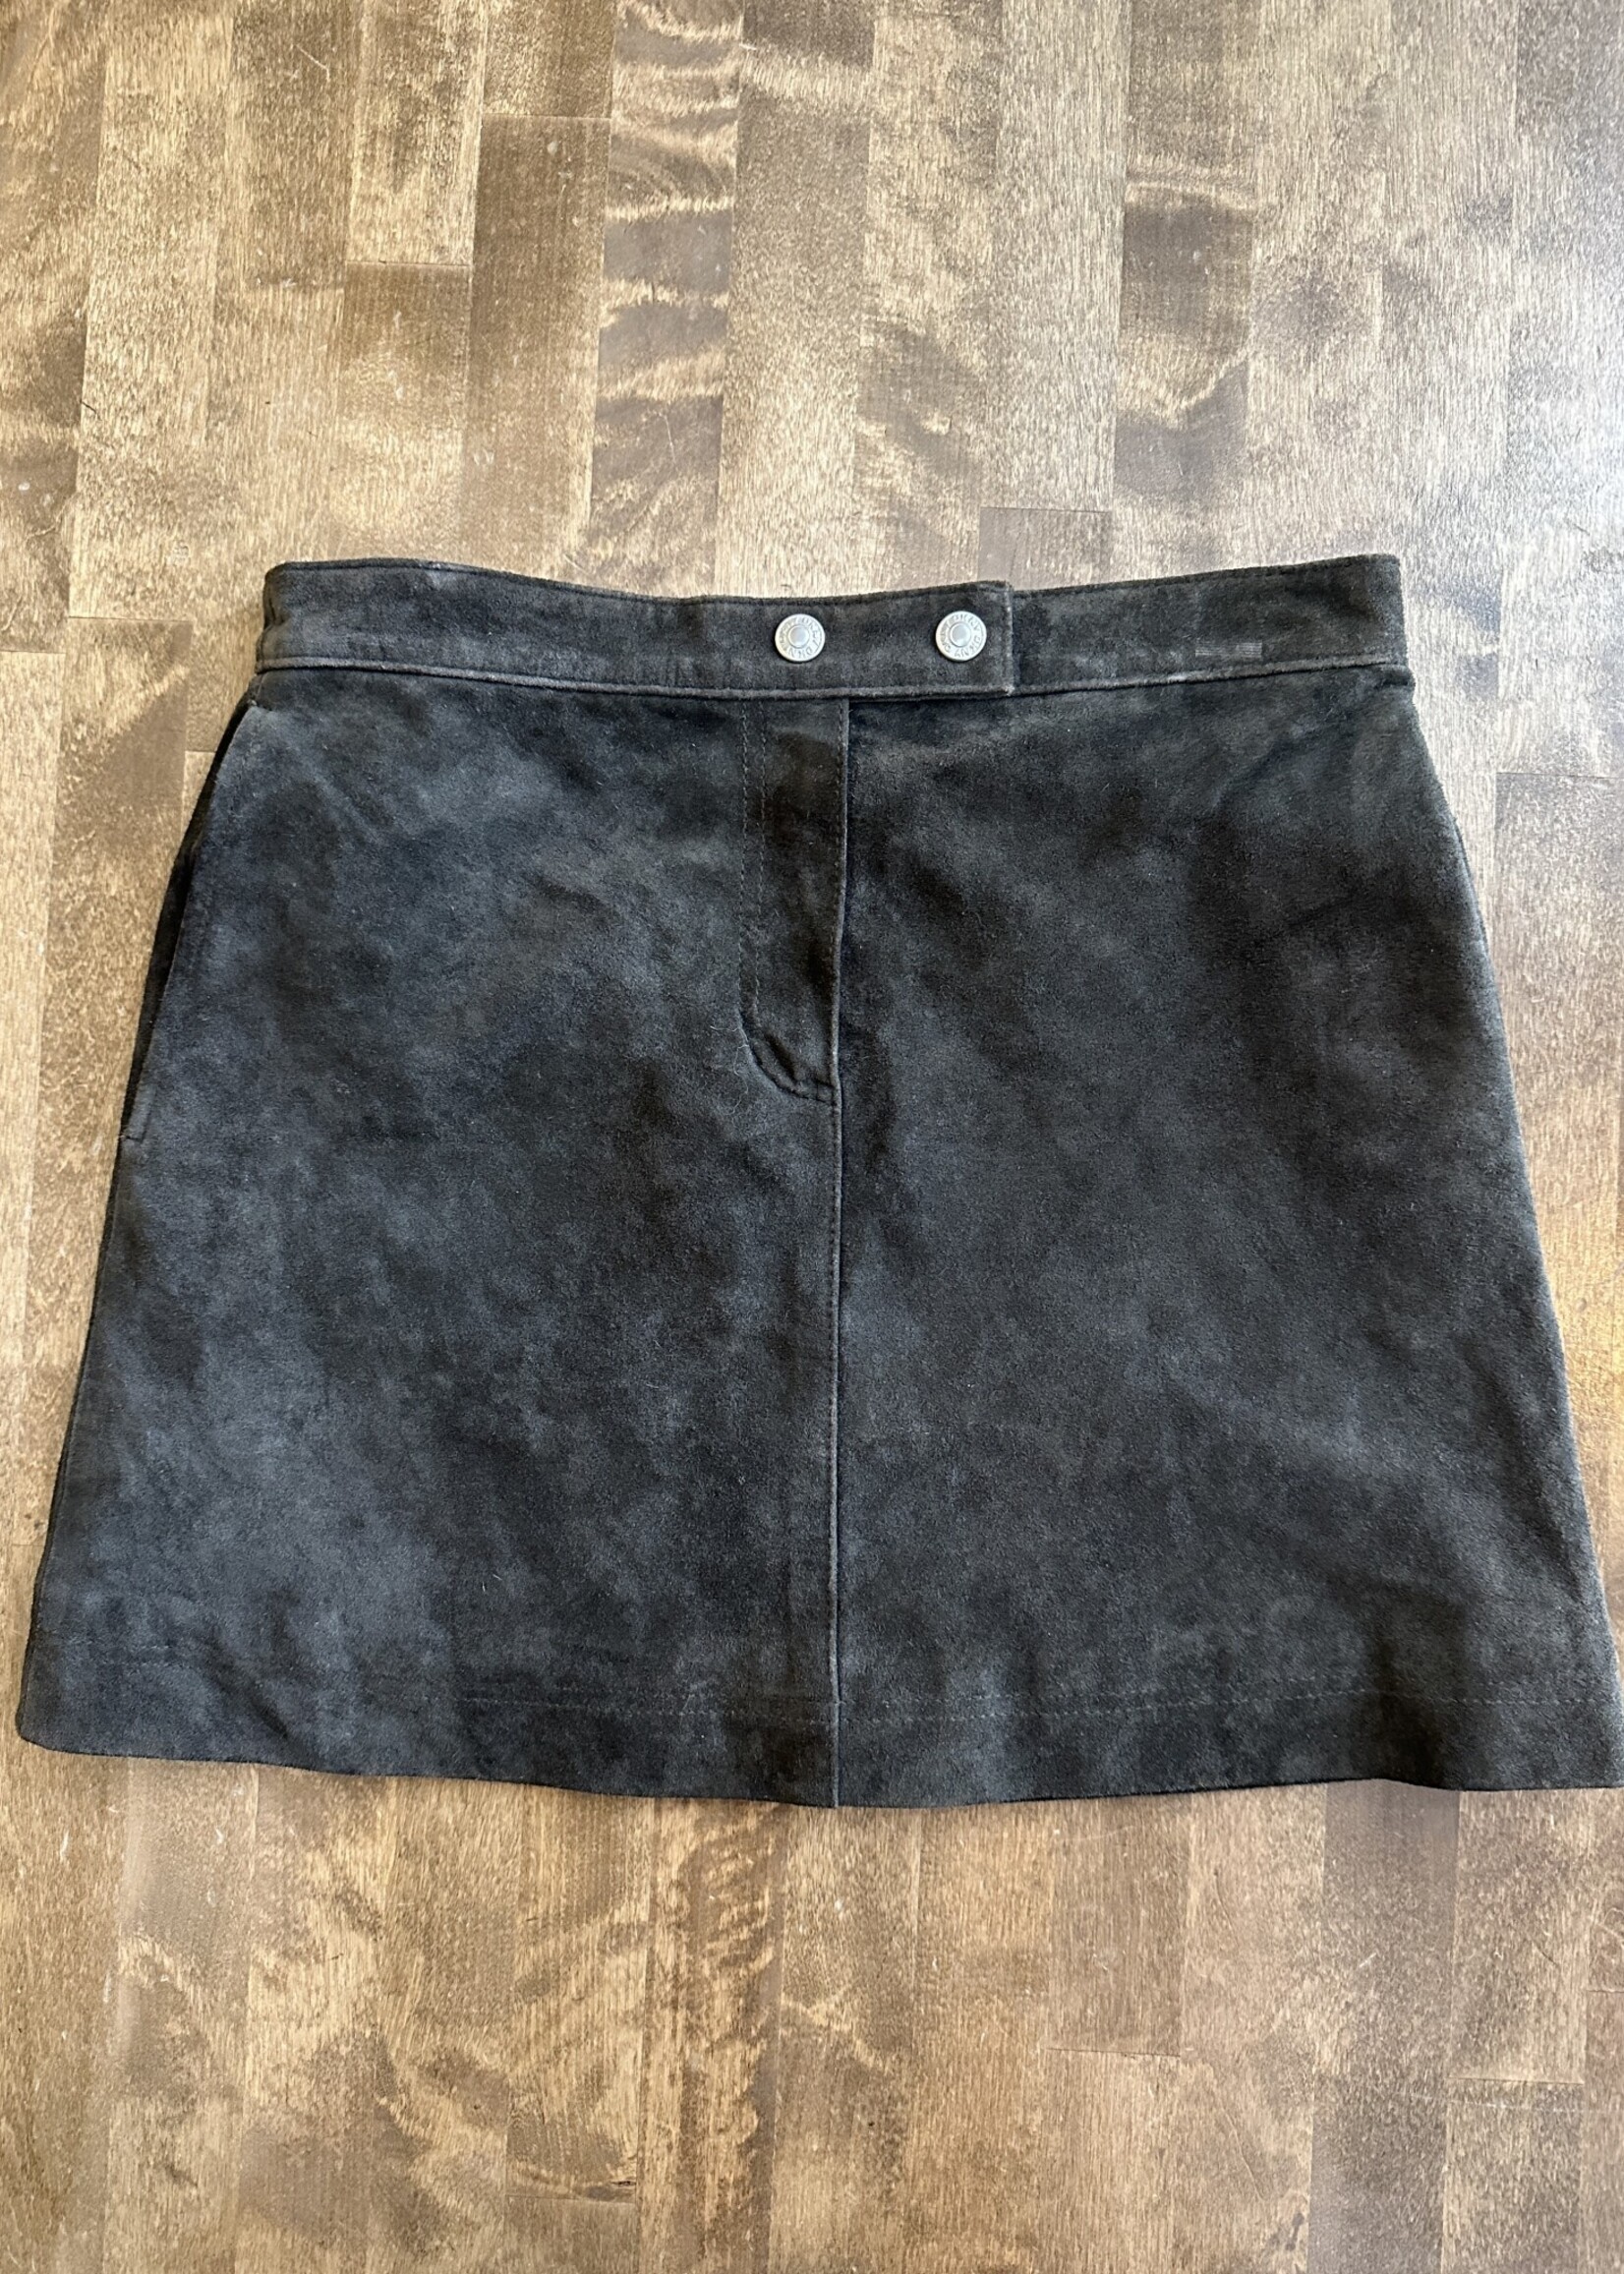 DKNY Dark Brown Suede Skirt 26 XS